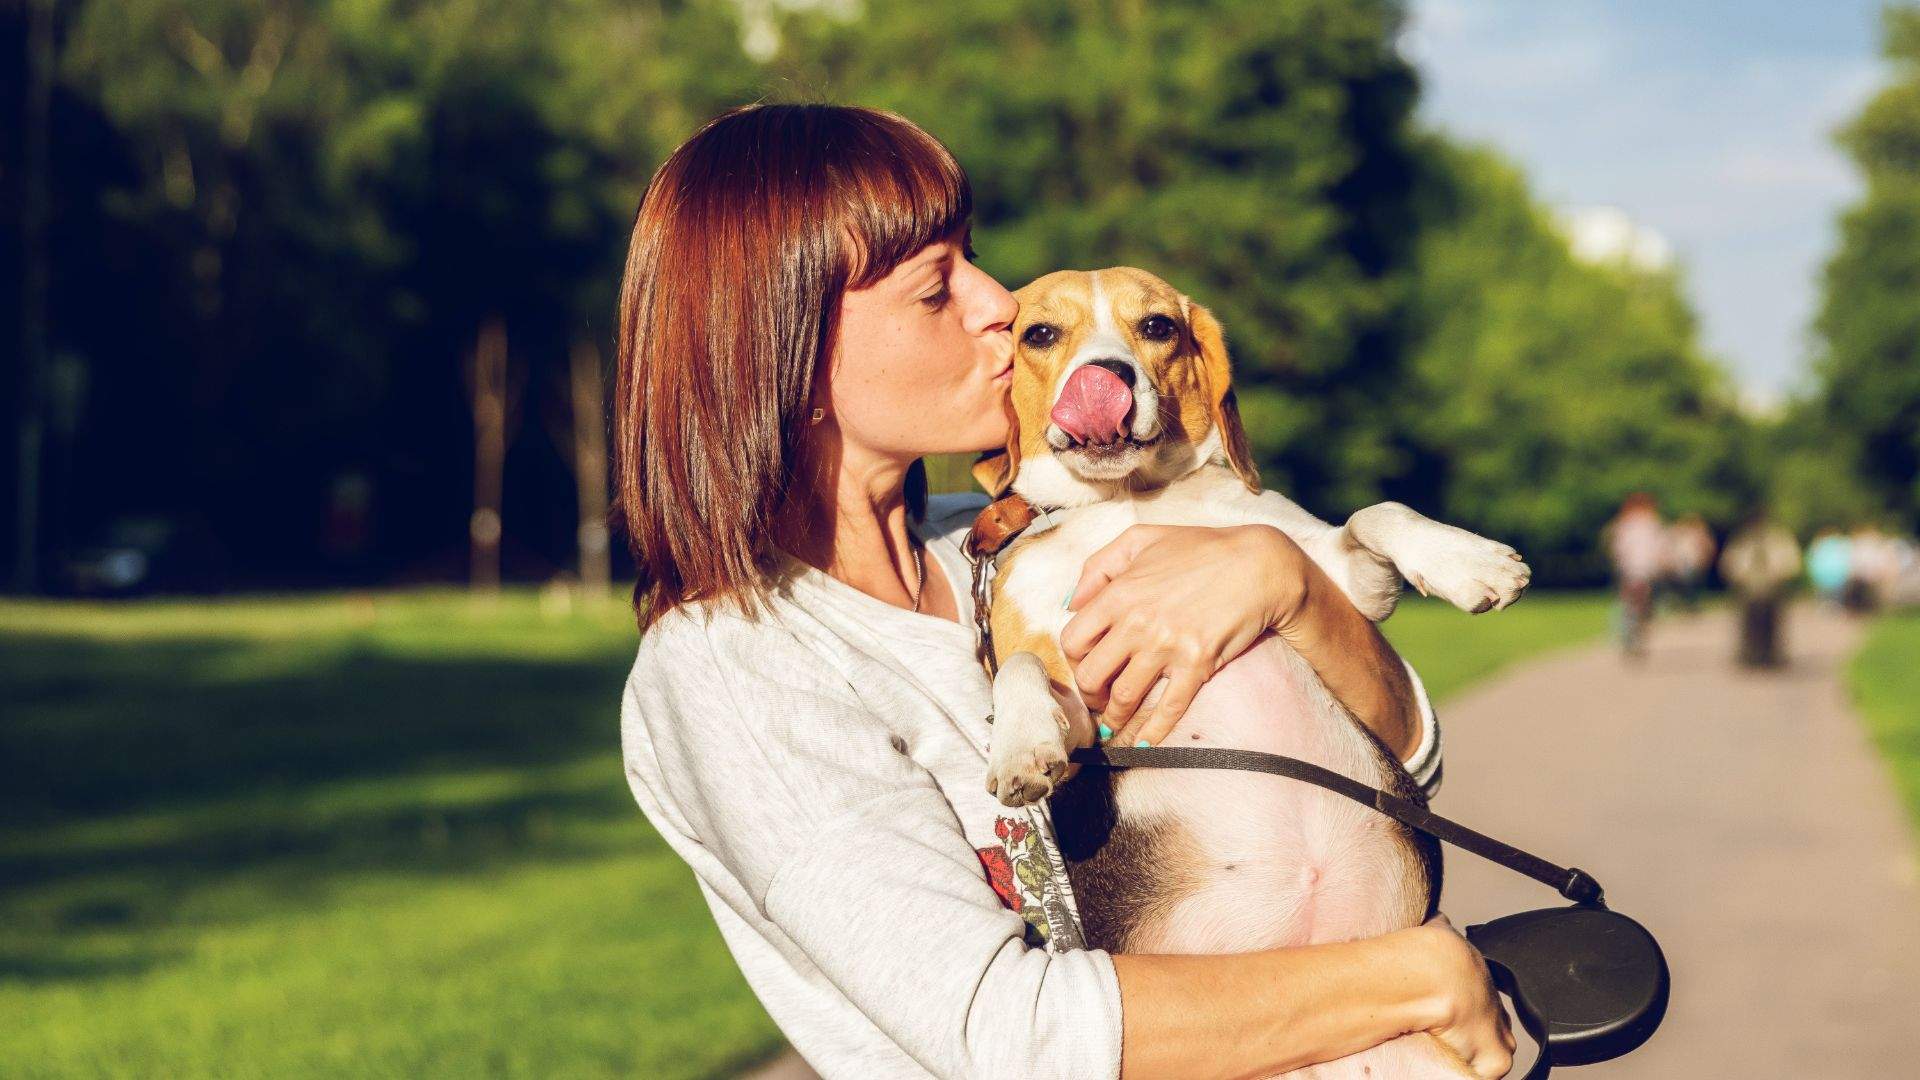 Woman kissing doggo